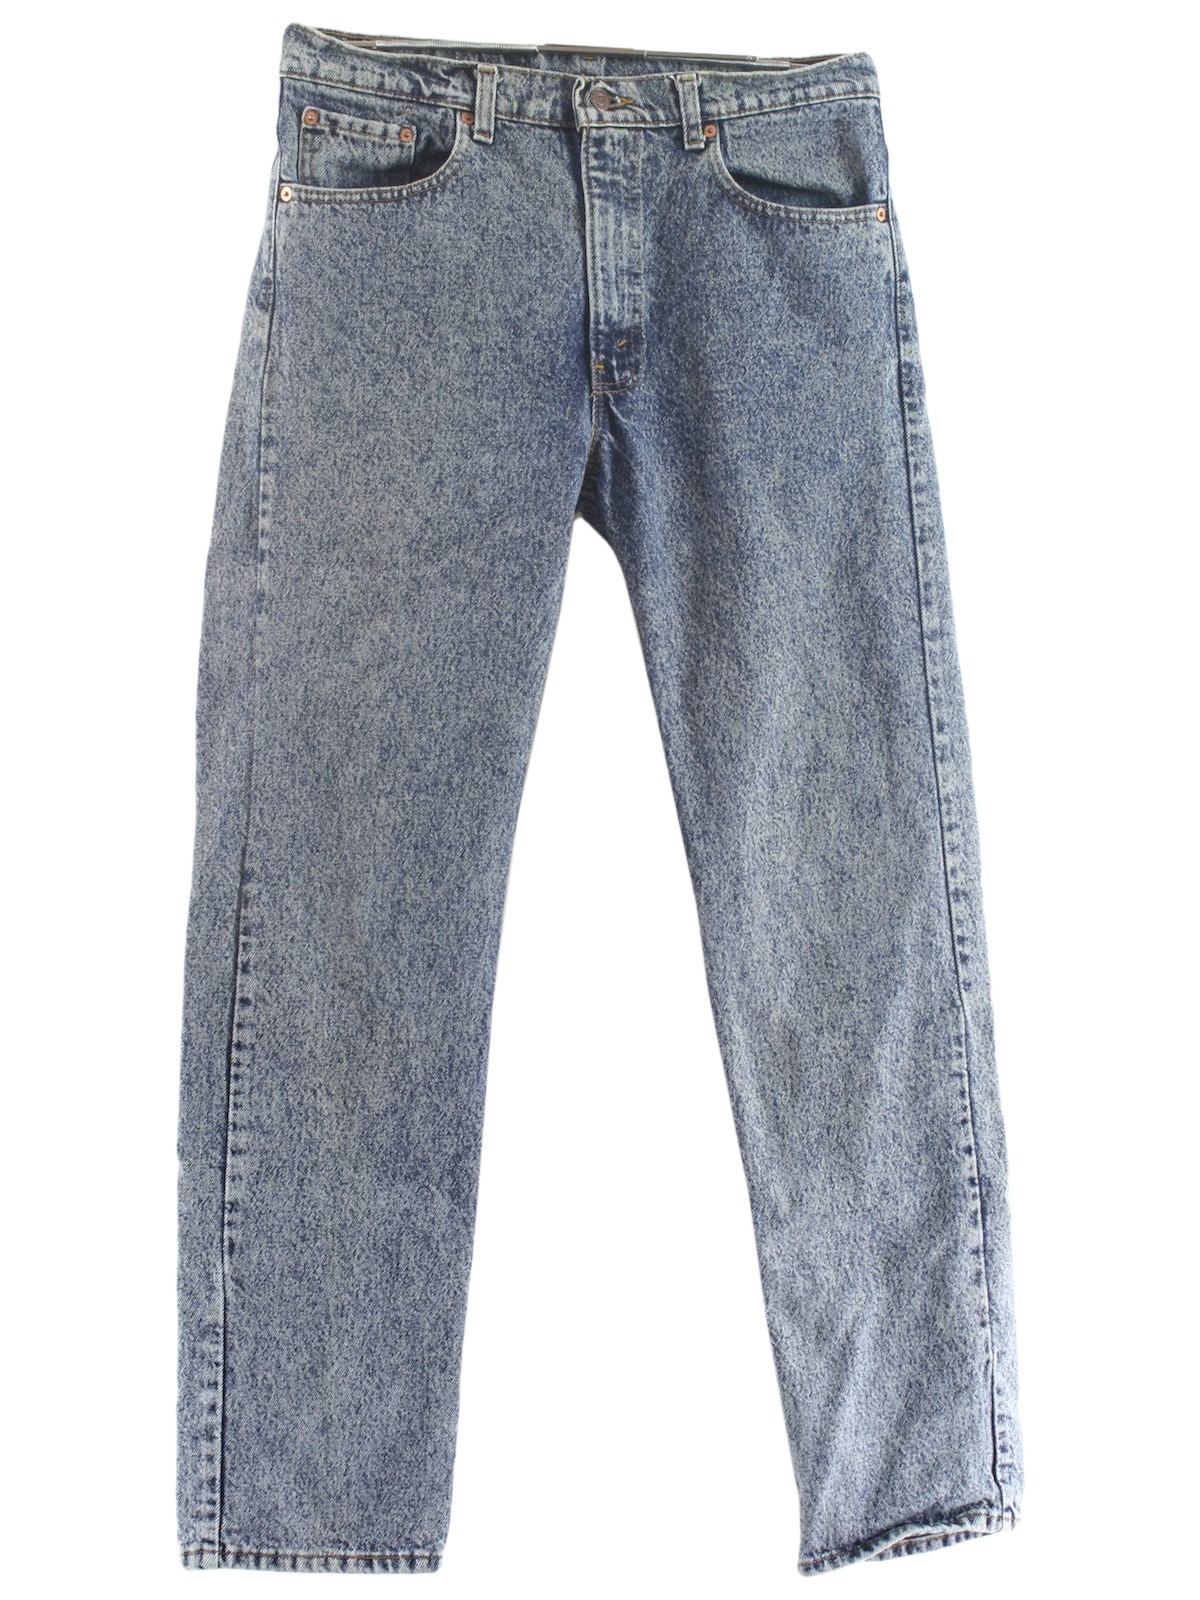 Levis 505 90's Vintage Pants: 90s -Levis 505- Mens well worn blue ...